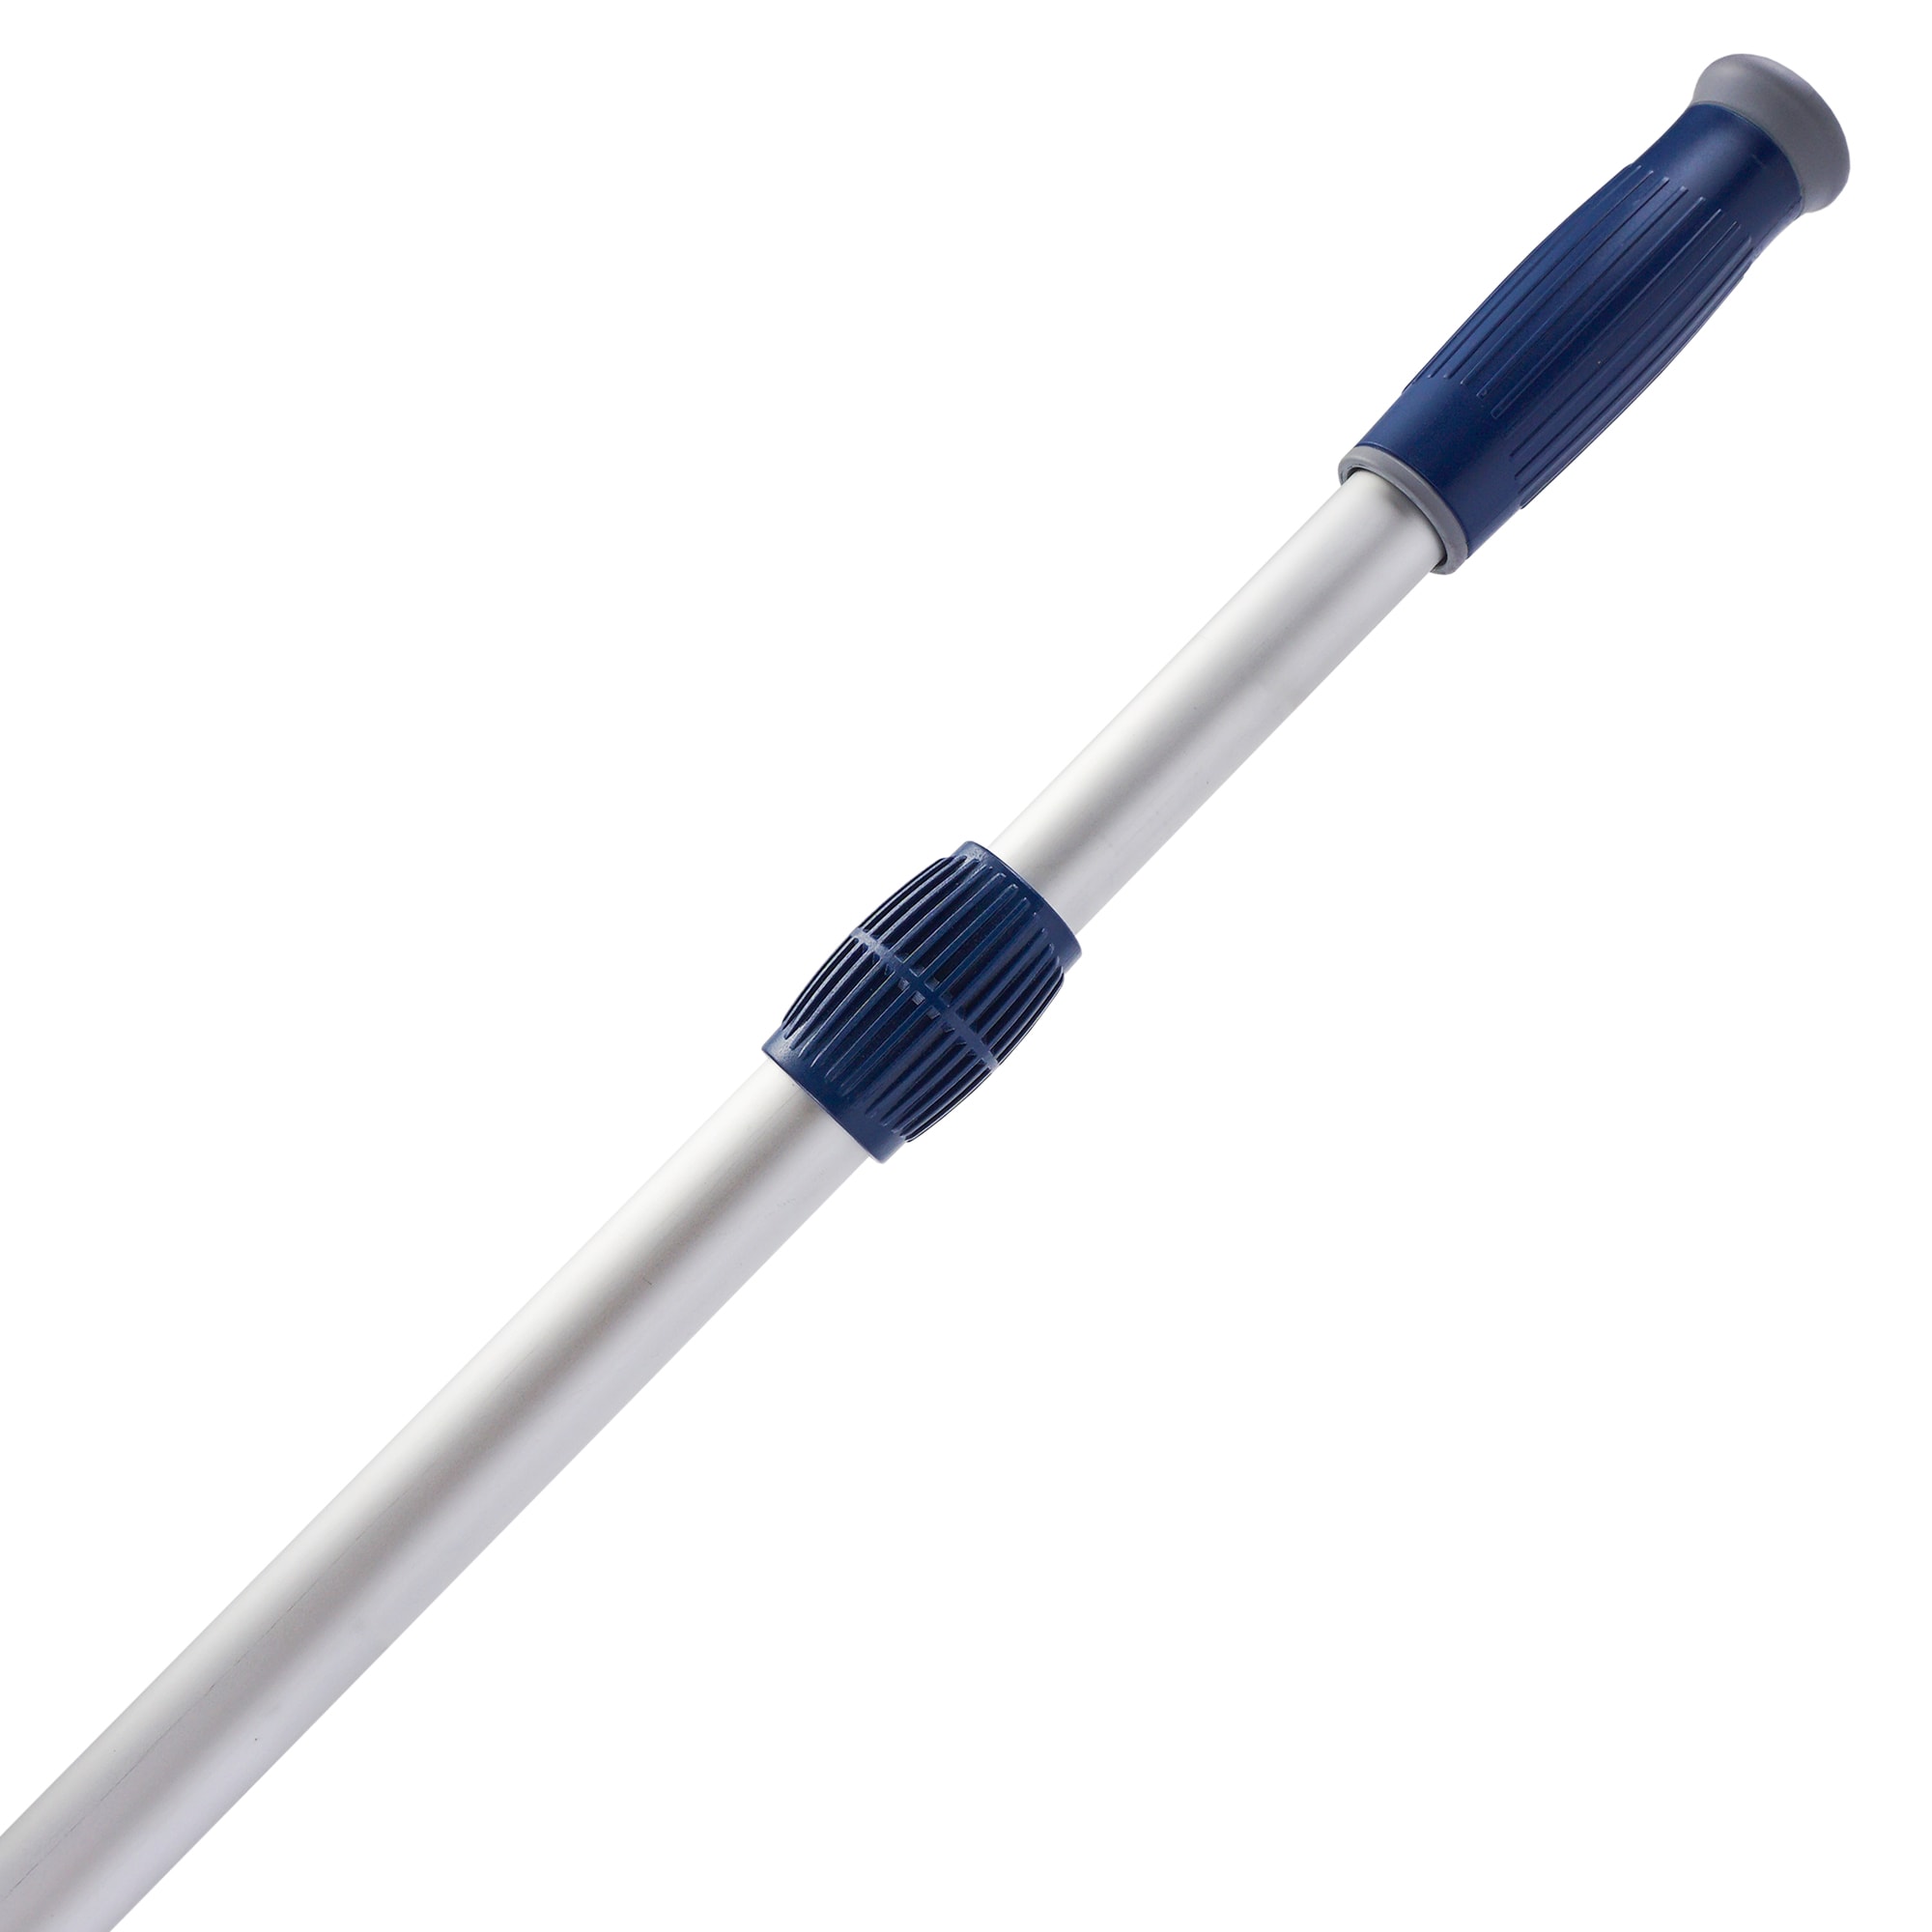 3M Extendable Pole XSL008, Sold by AquaPhoenix Scientific Extendable Pole